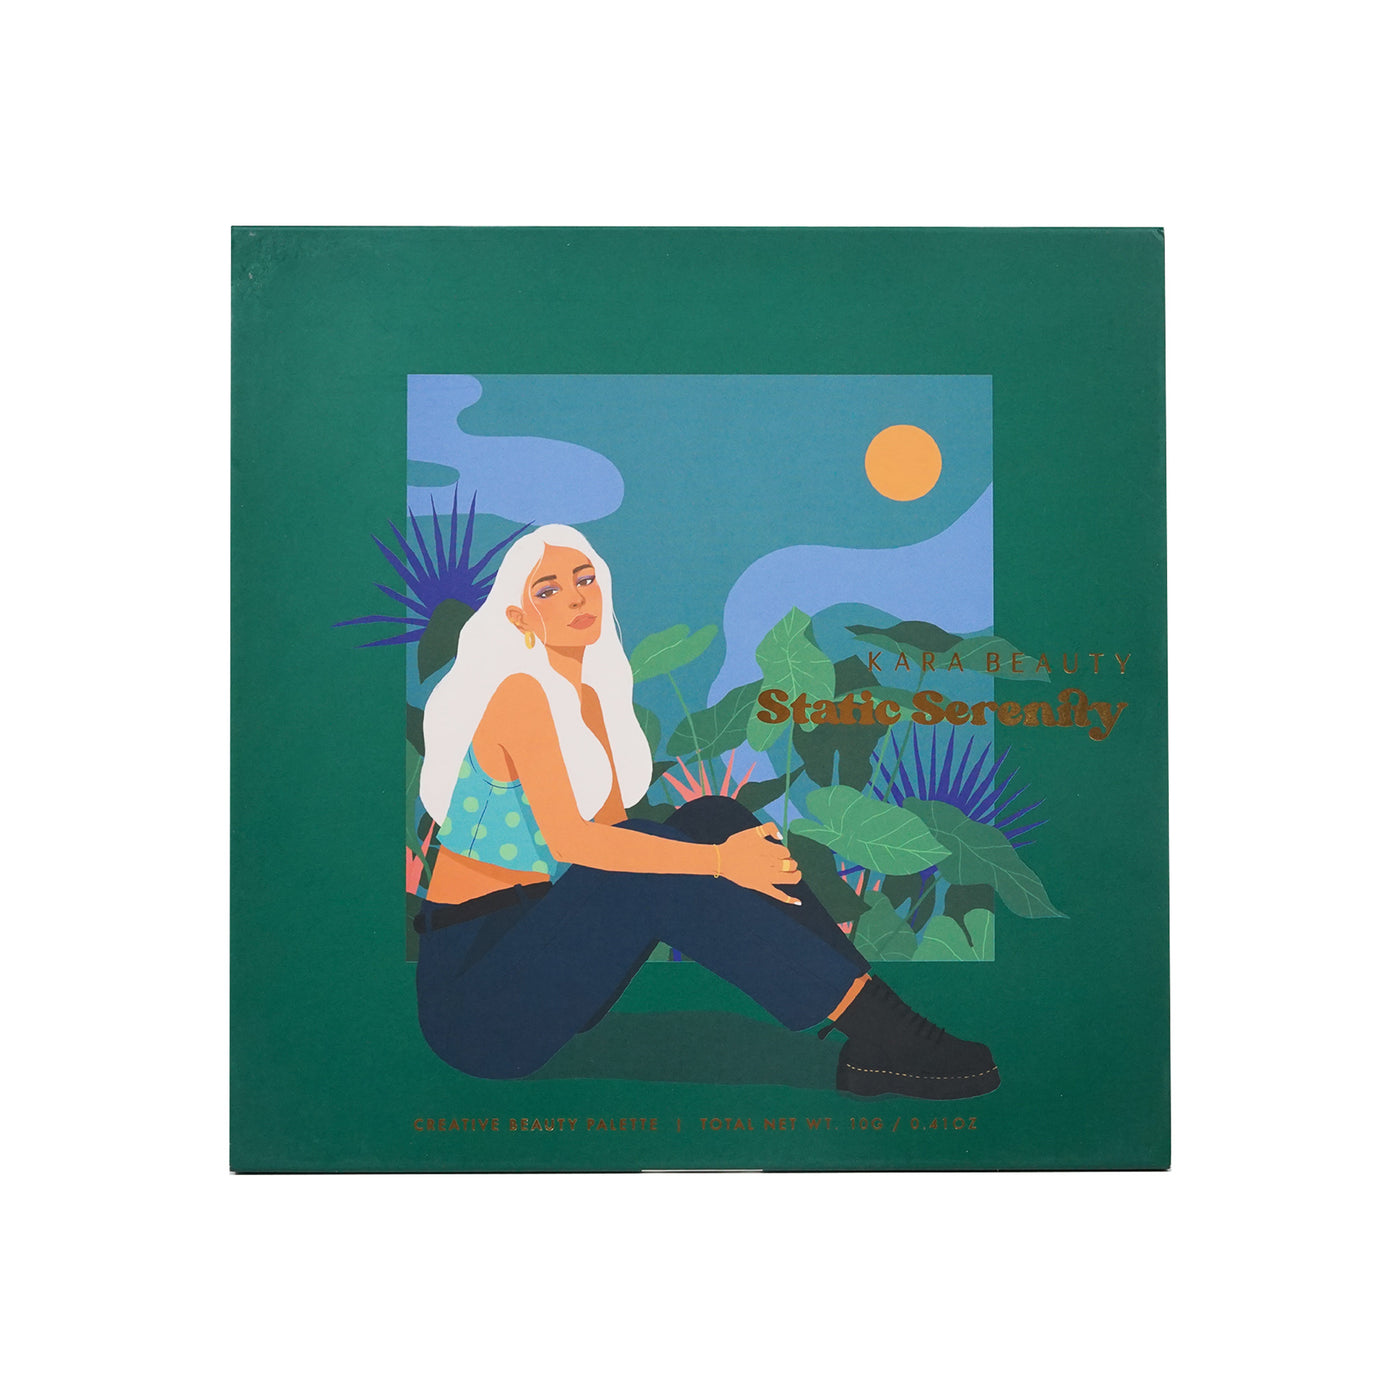 Sleeve artwork for Kara Beauty's Static Serenity 36-shade vegan palette